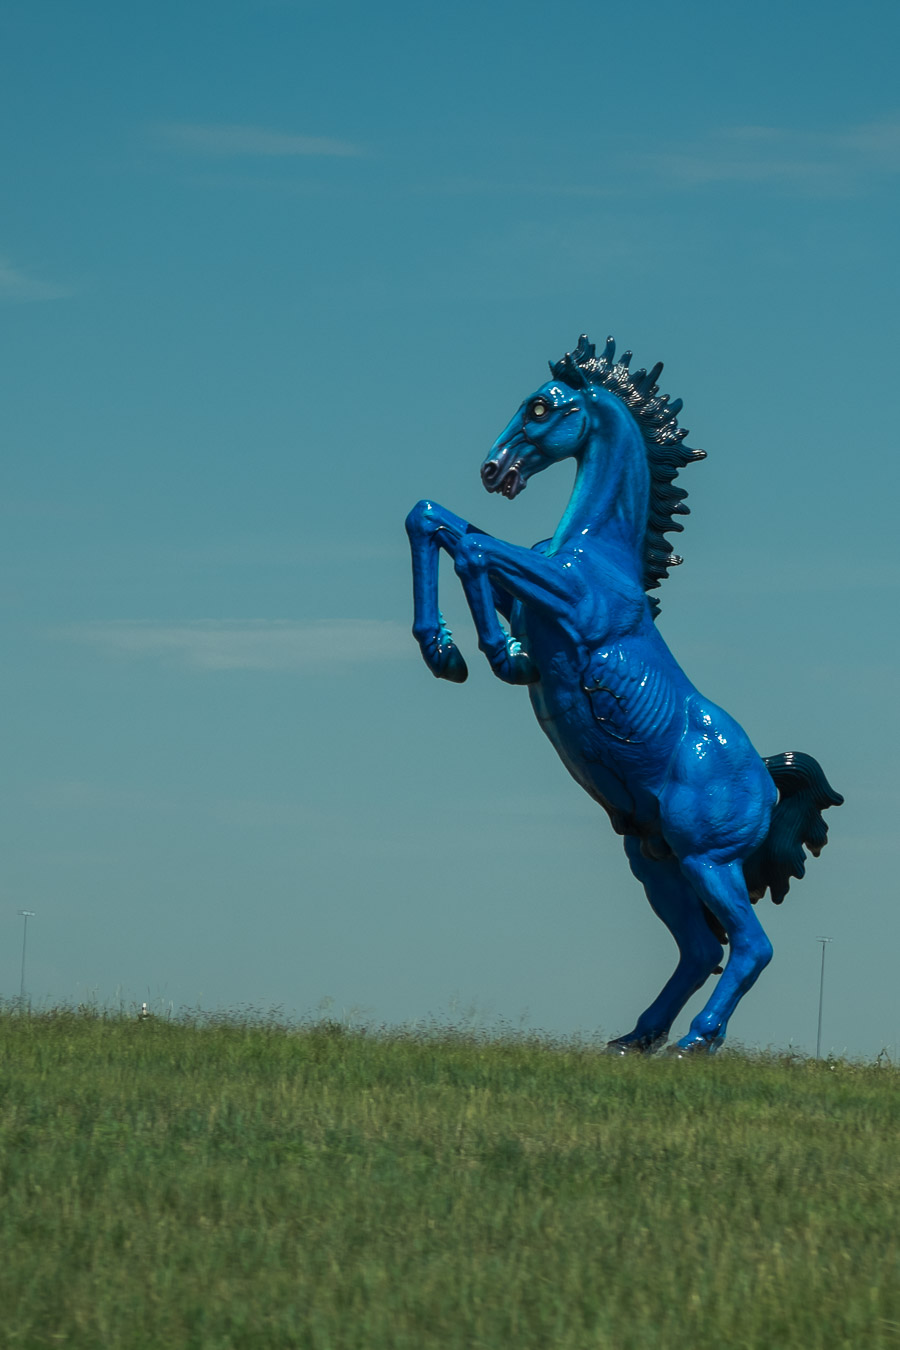 Blue Stallion